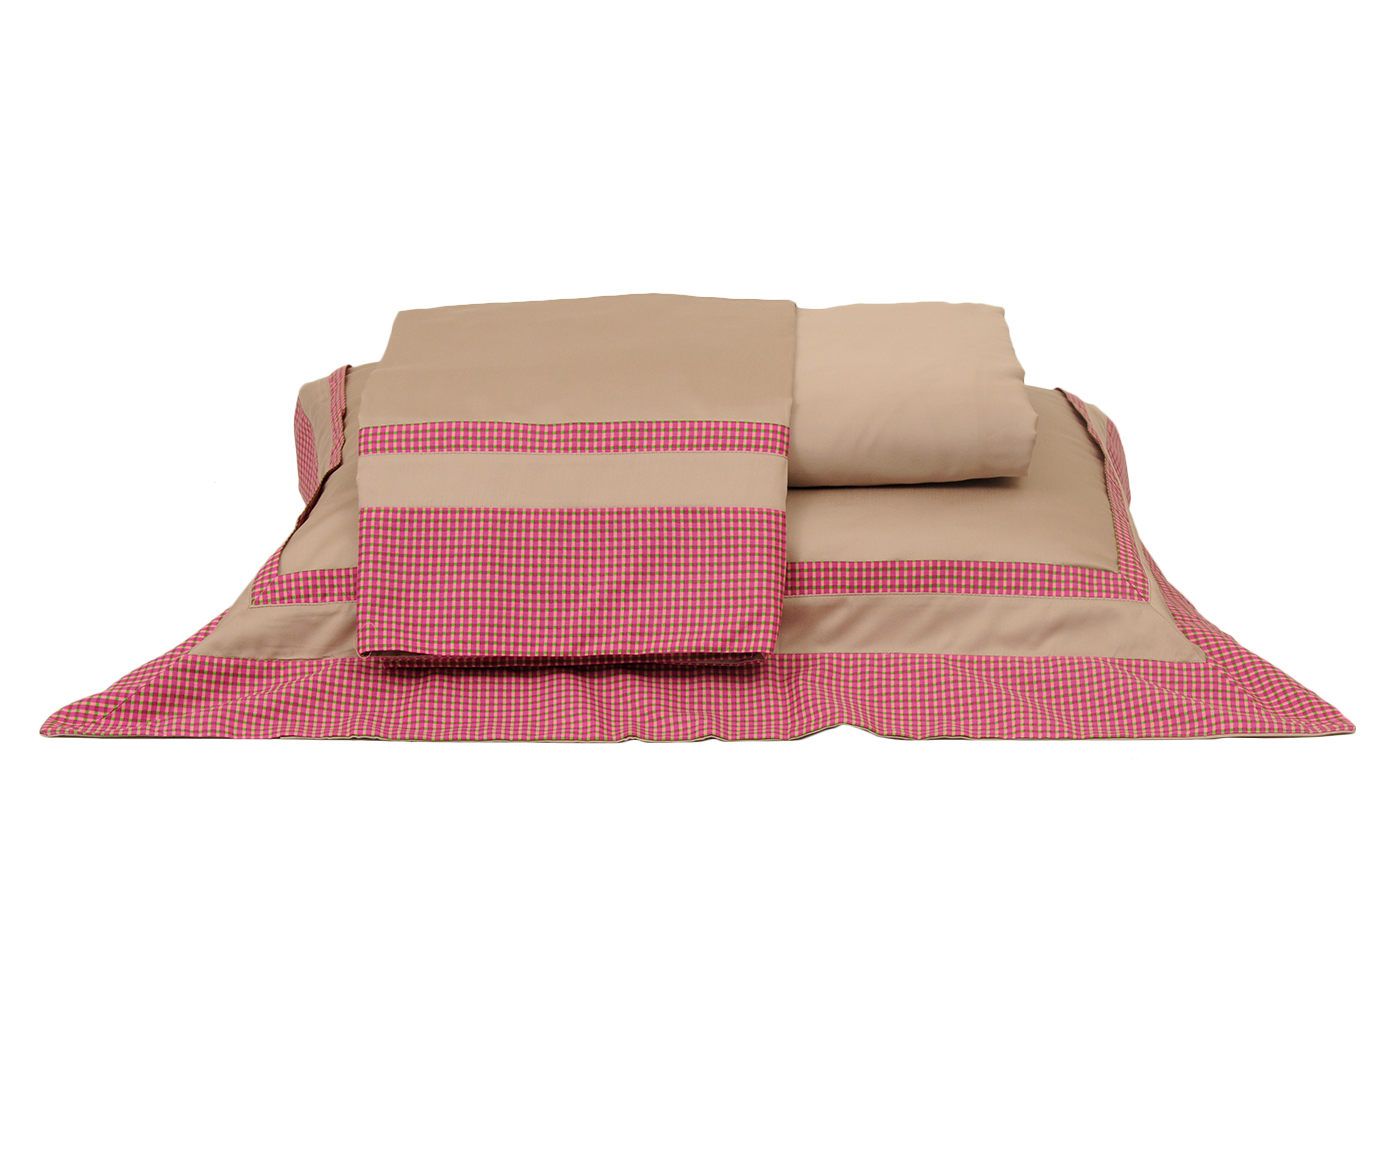 Jogo de lençol vichy absolutê 200 fios - para cama queen size | Westwing.com.br